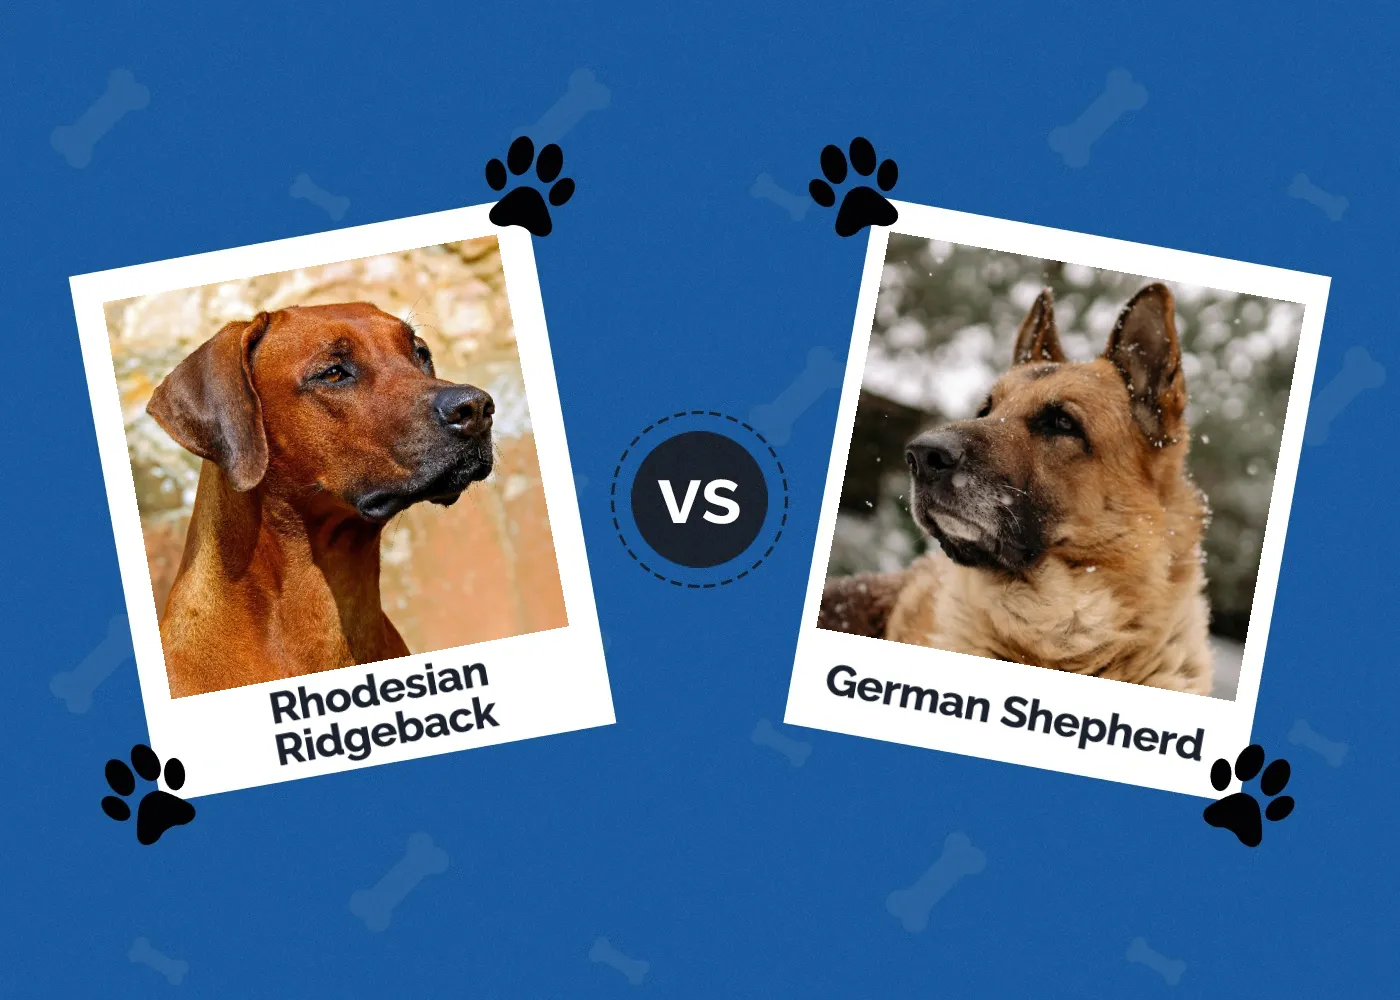 Rhodesian Ridgeback vs German Shepherd - Featured Image